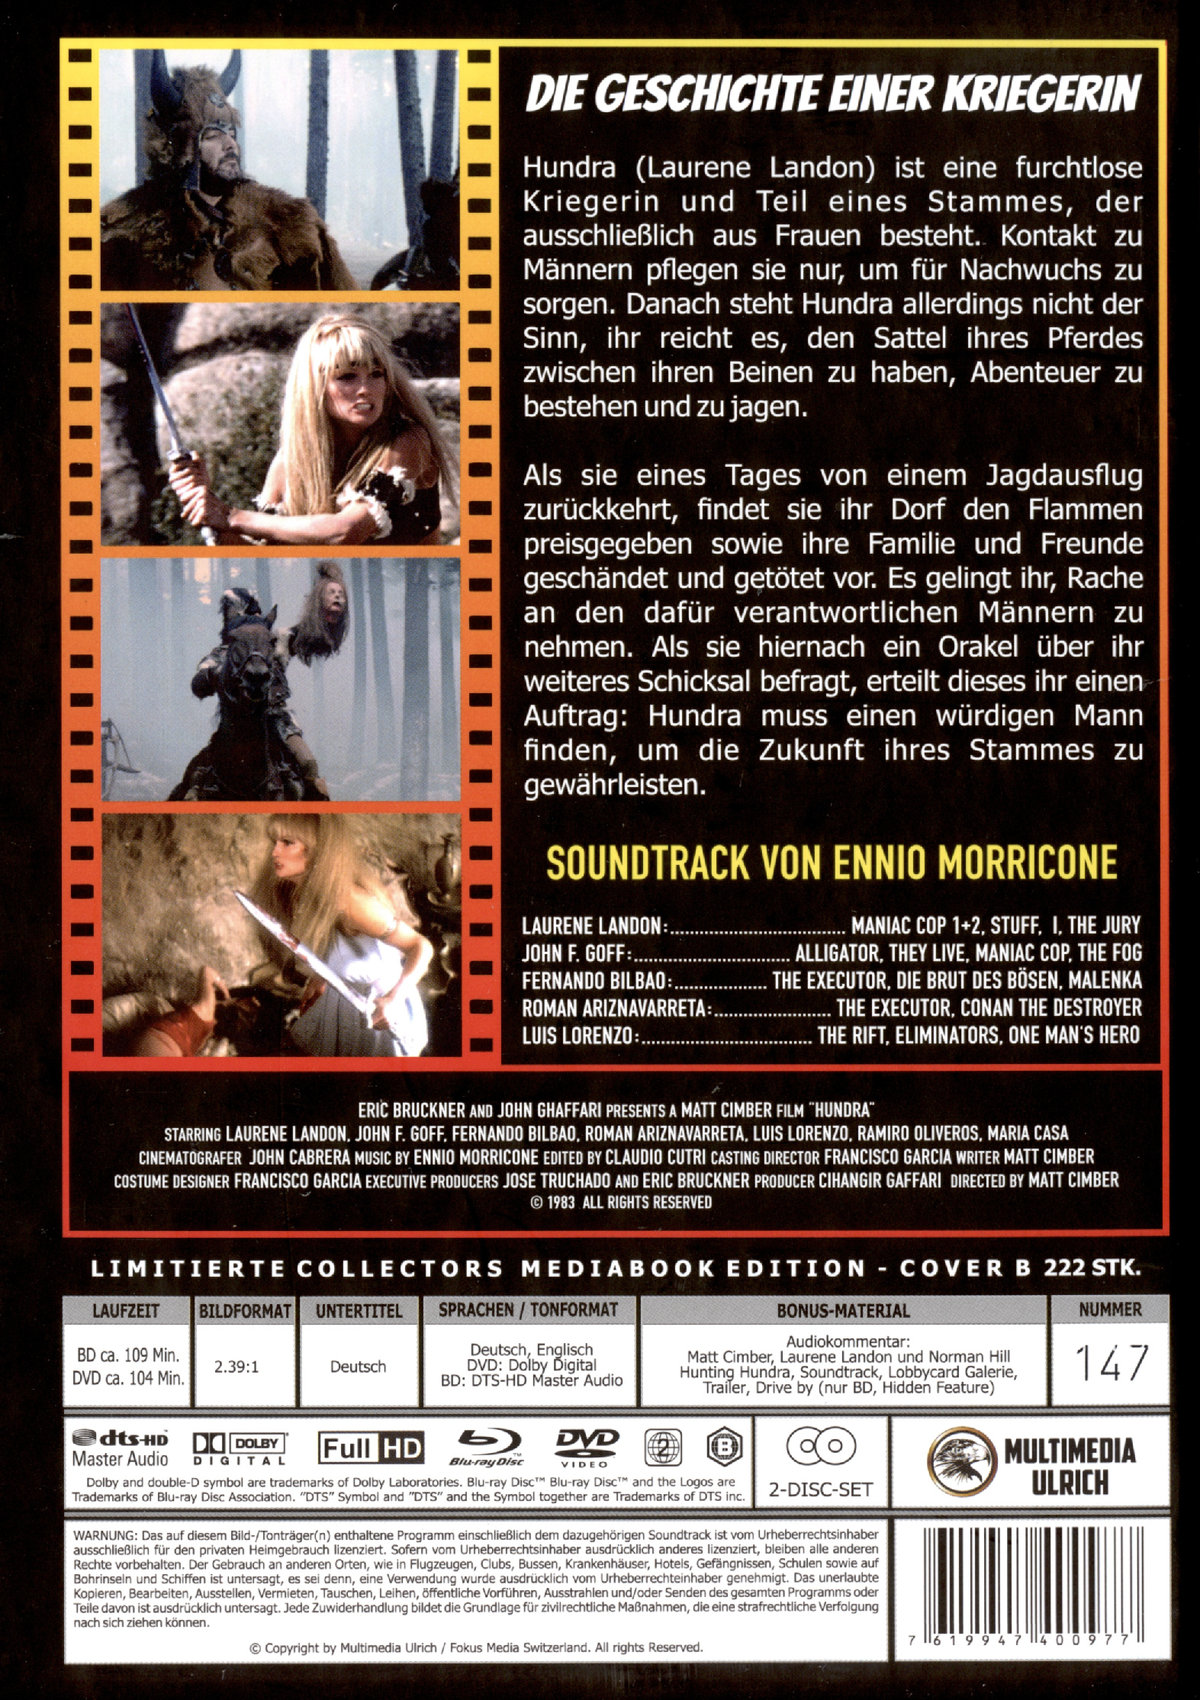 Hundra - Die Geschichte einer Kriegerin - Uncut Mediabook Edition  (DVD+blu-ray) (B)